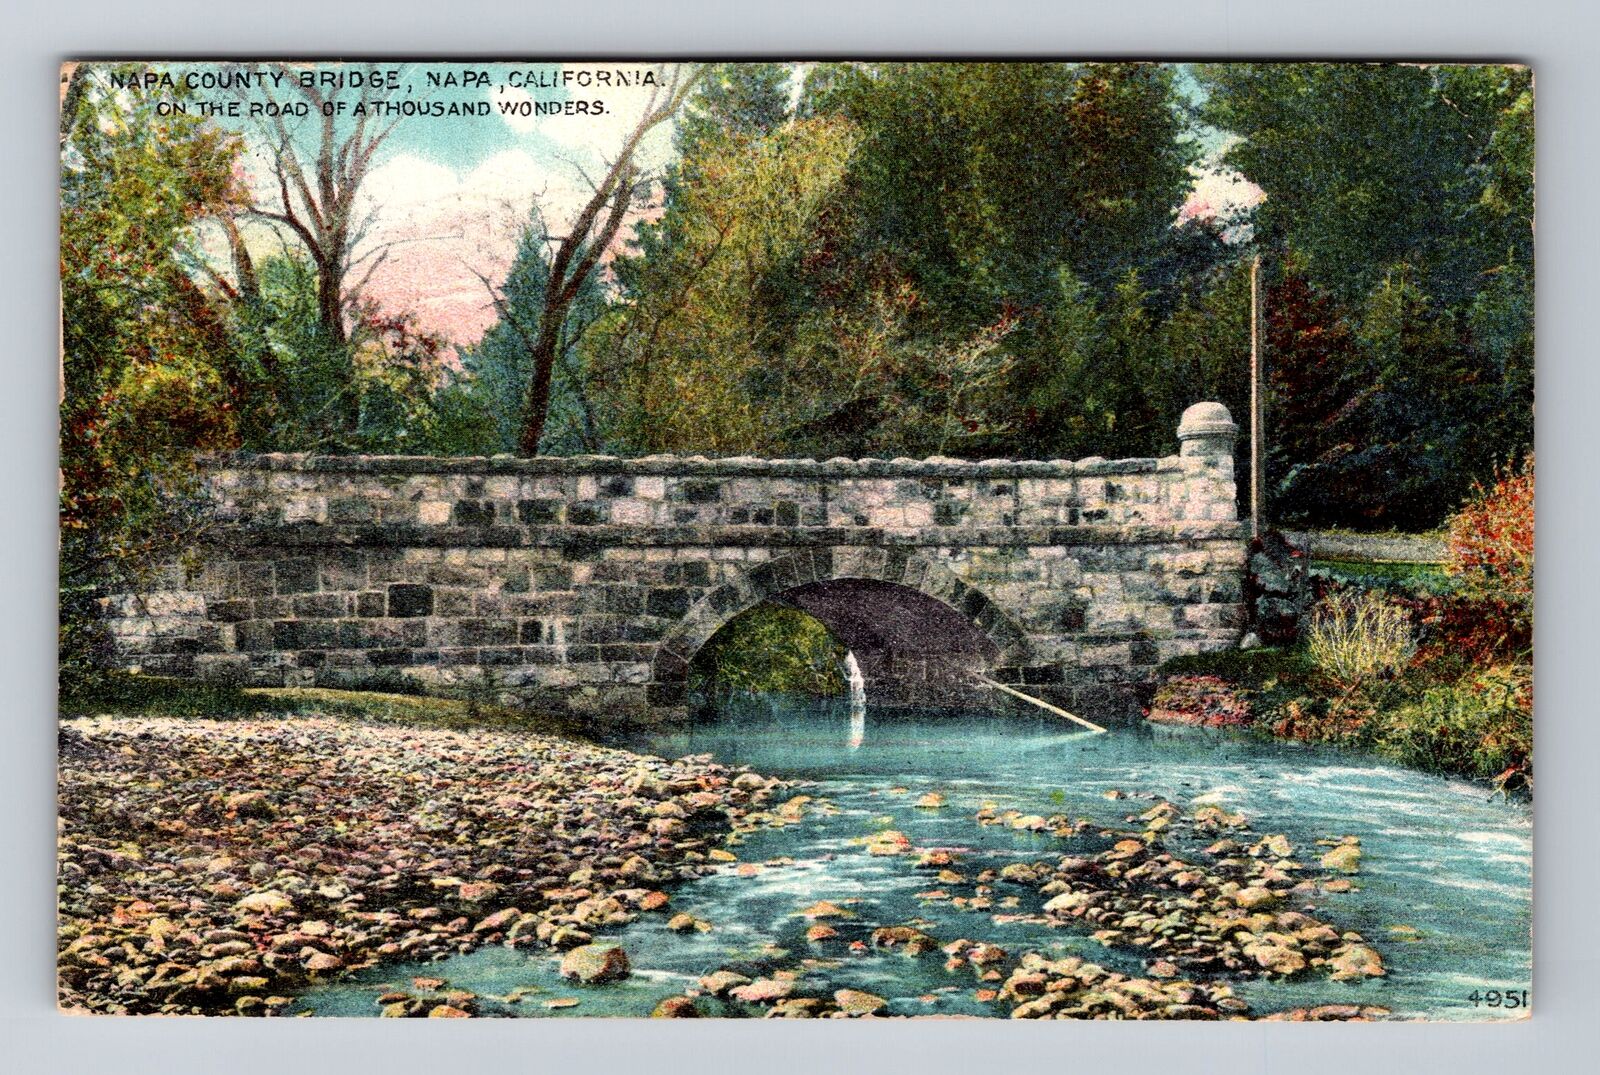 Napa CA-California, Napa County Bridge, Antique Souvenir Vintage Postcard